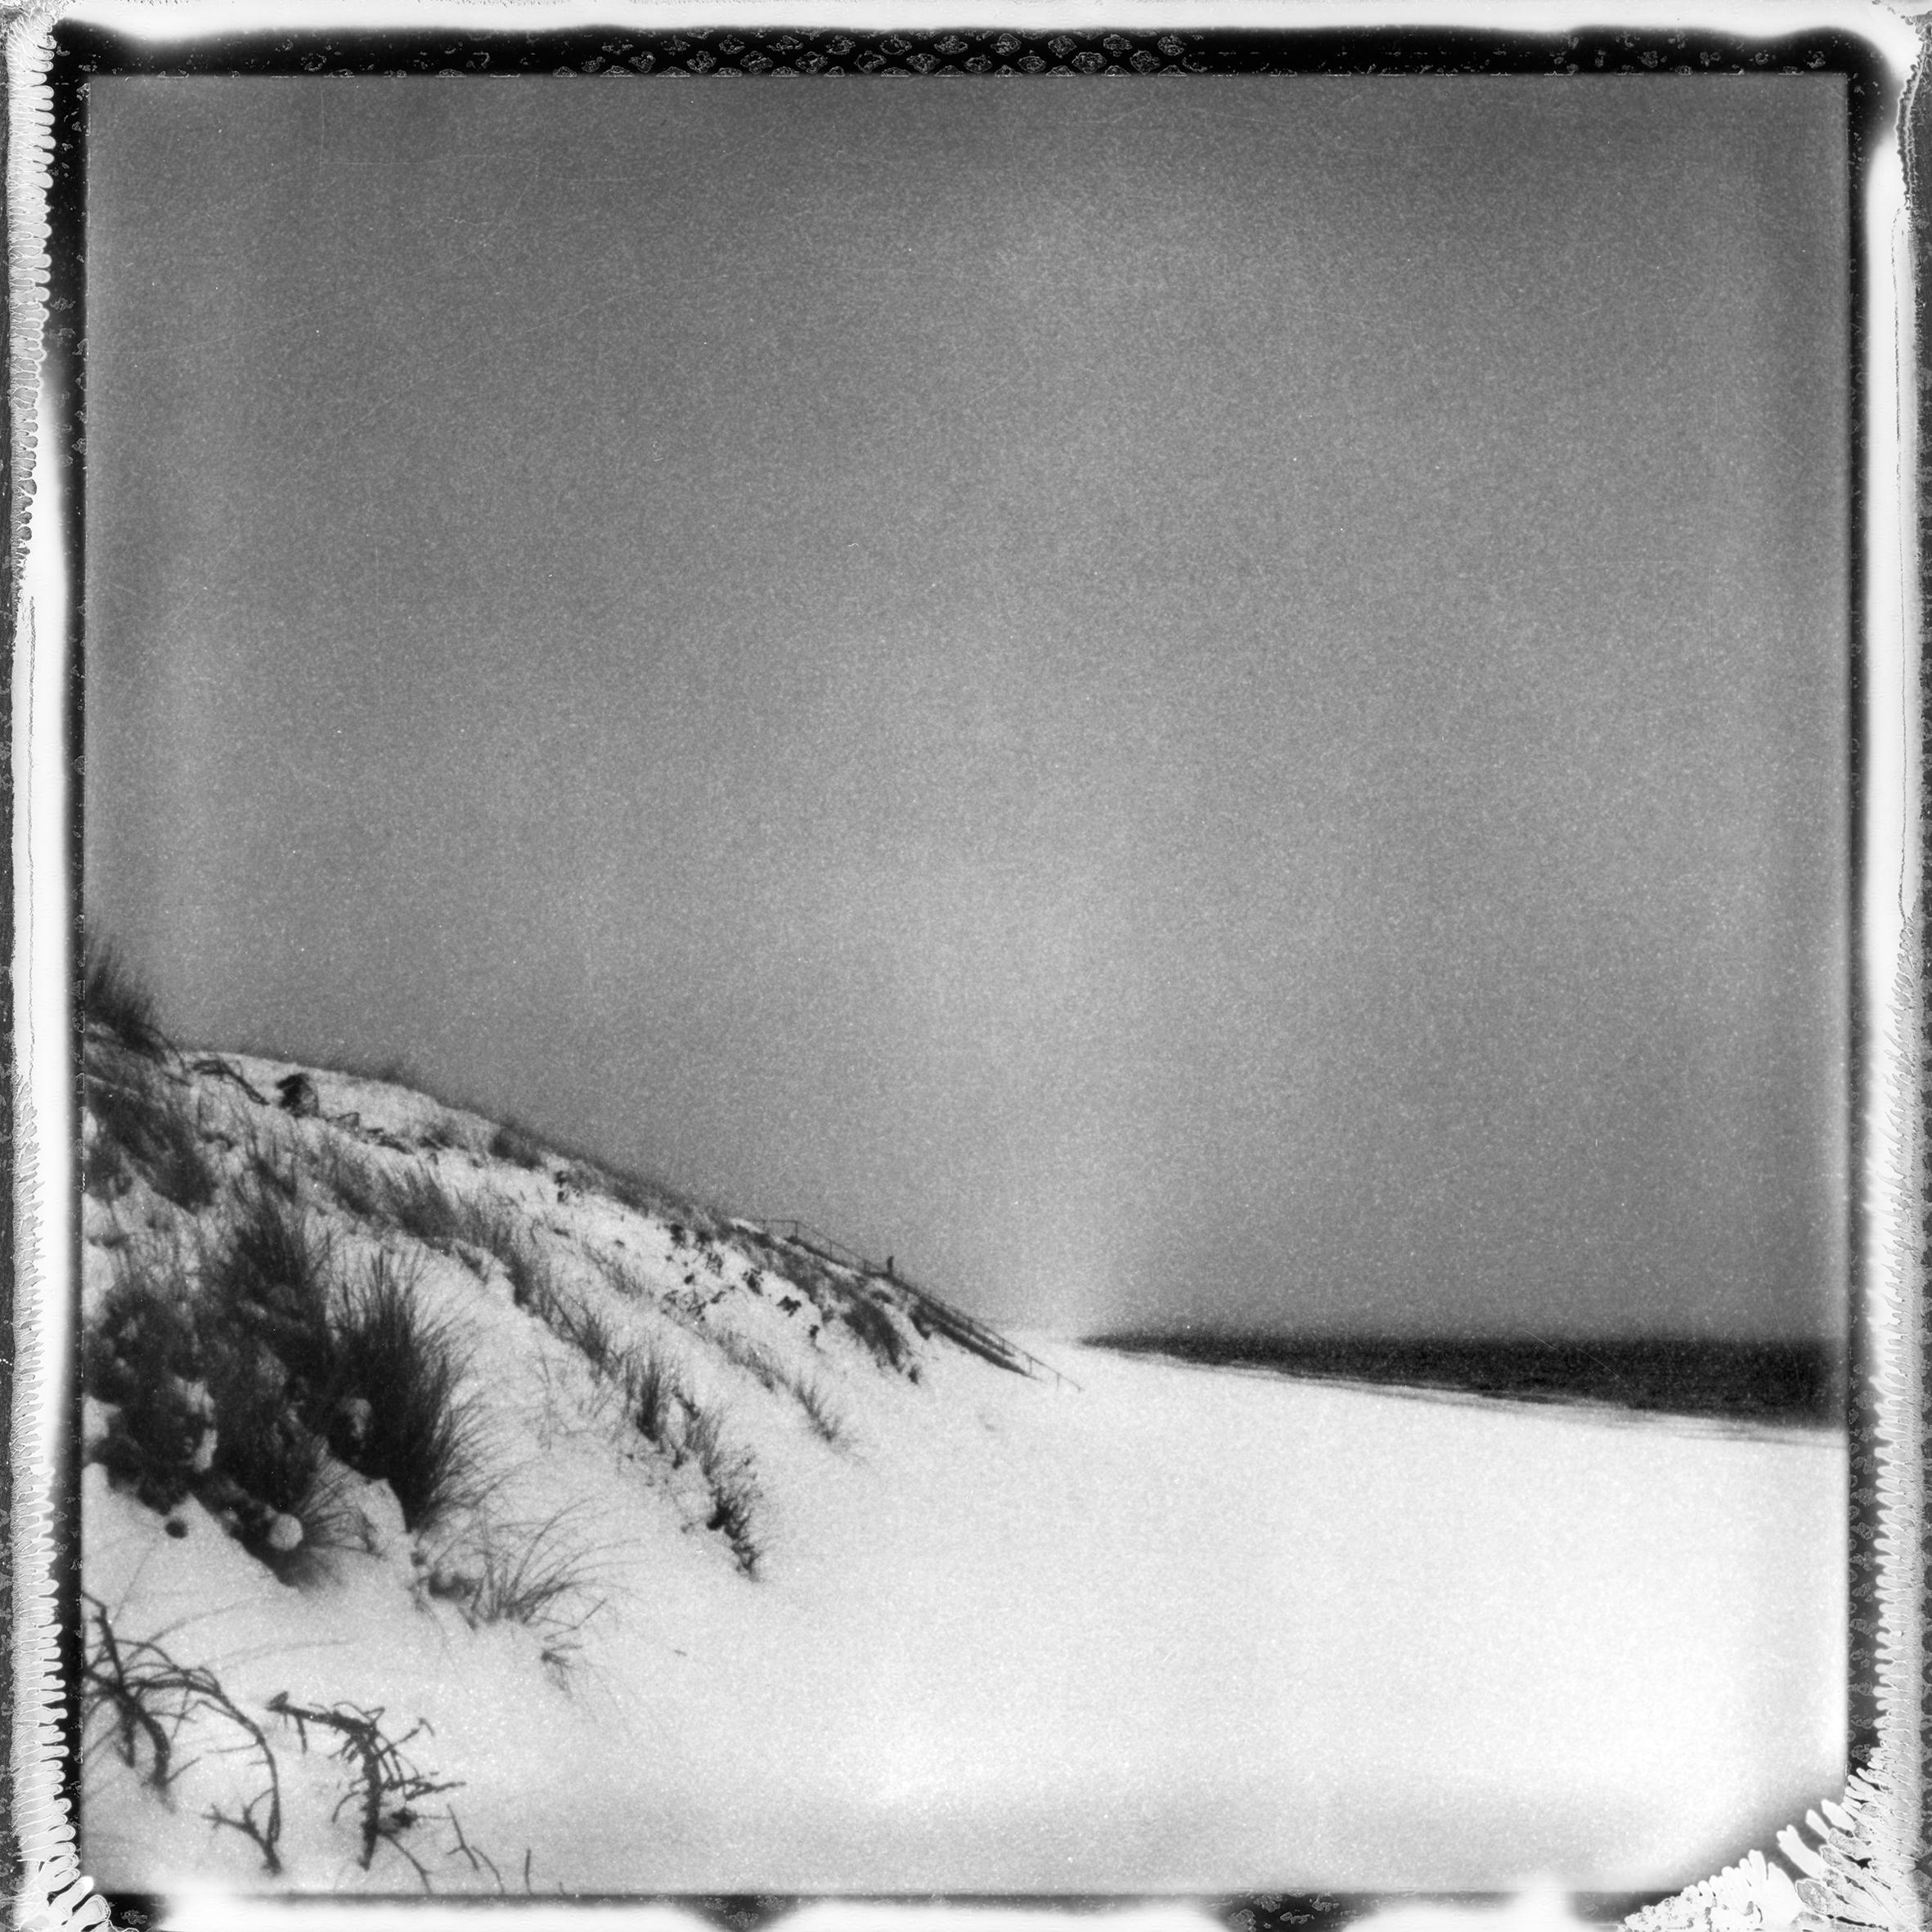 'Frozen beach #2' - photographie de paysage analogique en noir et blanc